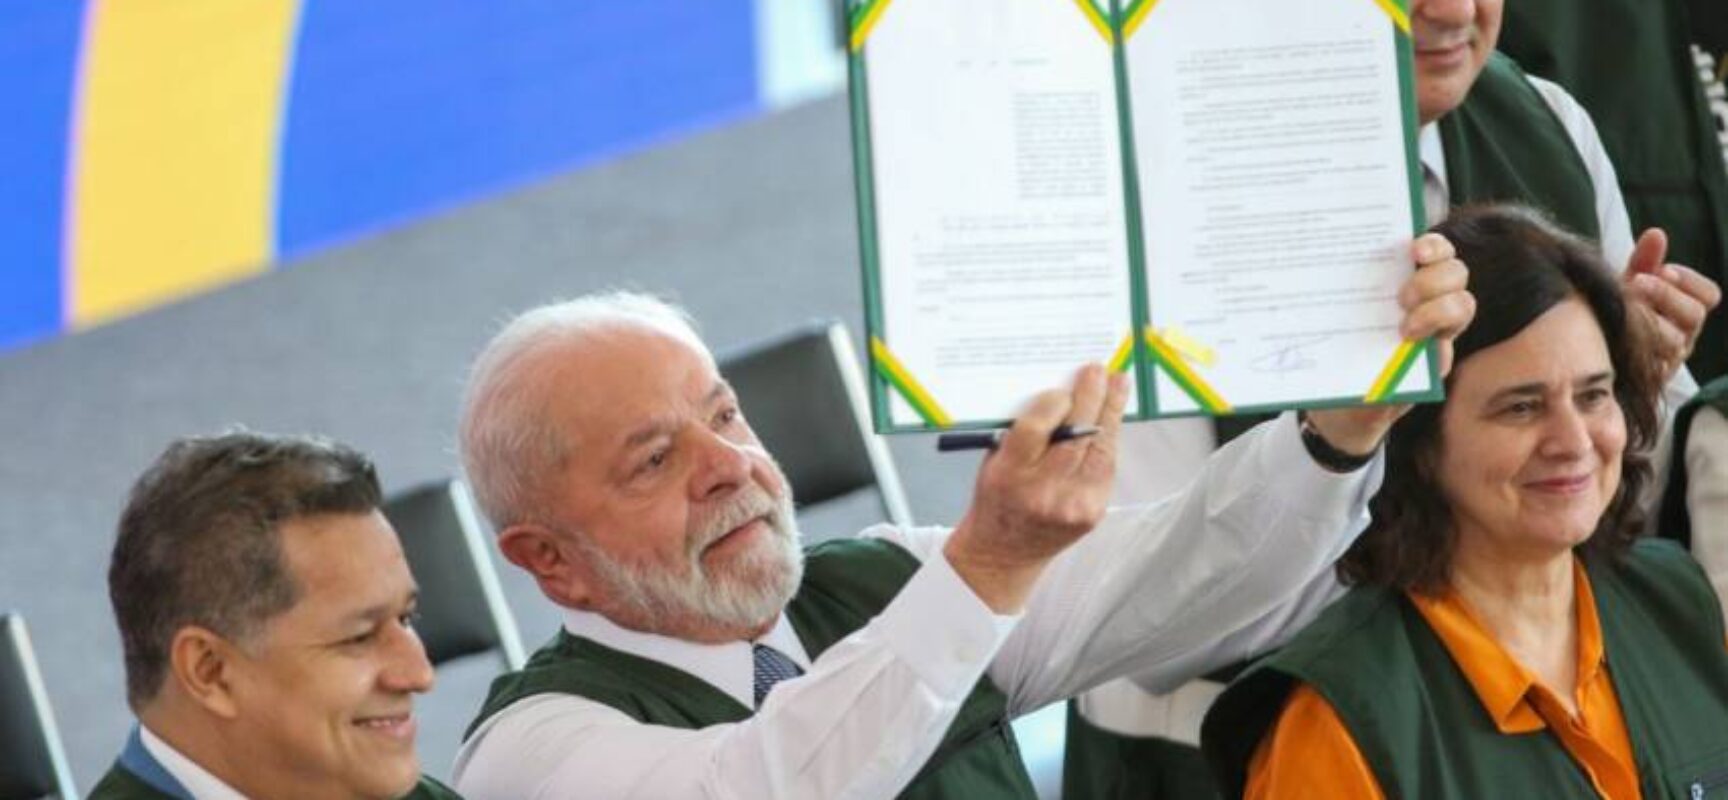 Estado brasileiro retomou sua capacidade de planejamento, diz Lula